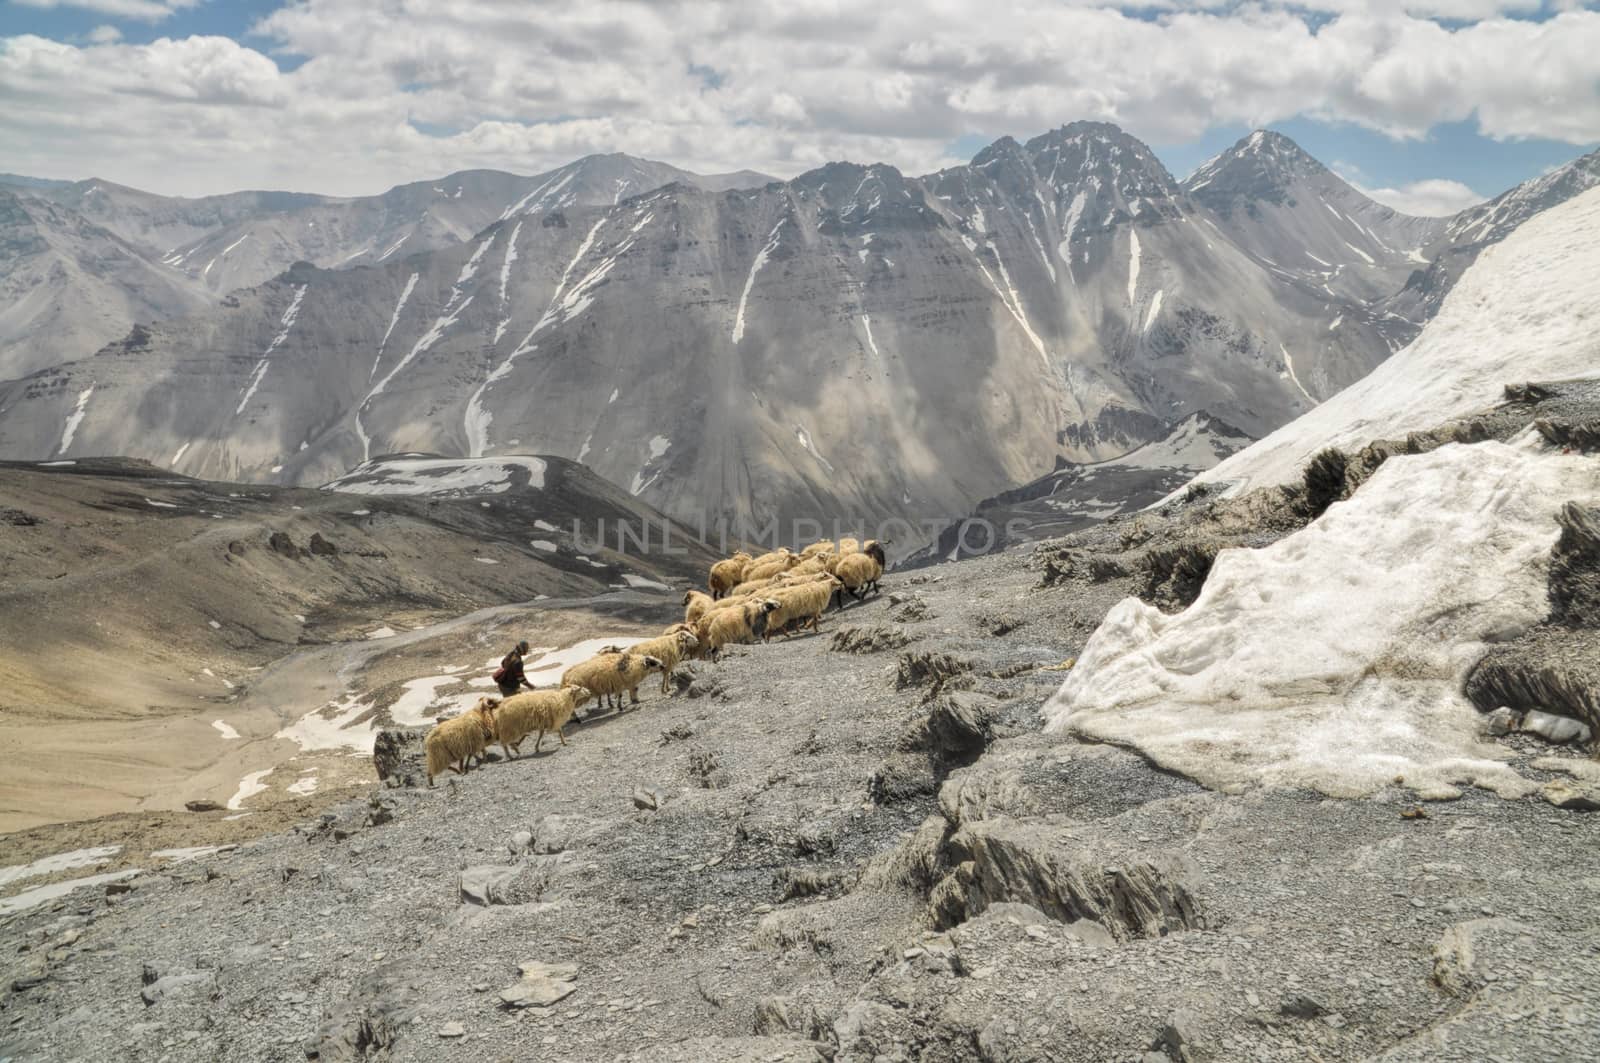 Sheep in Himalayas by MichalKnitl